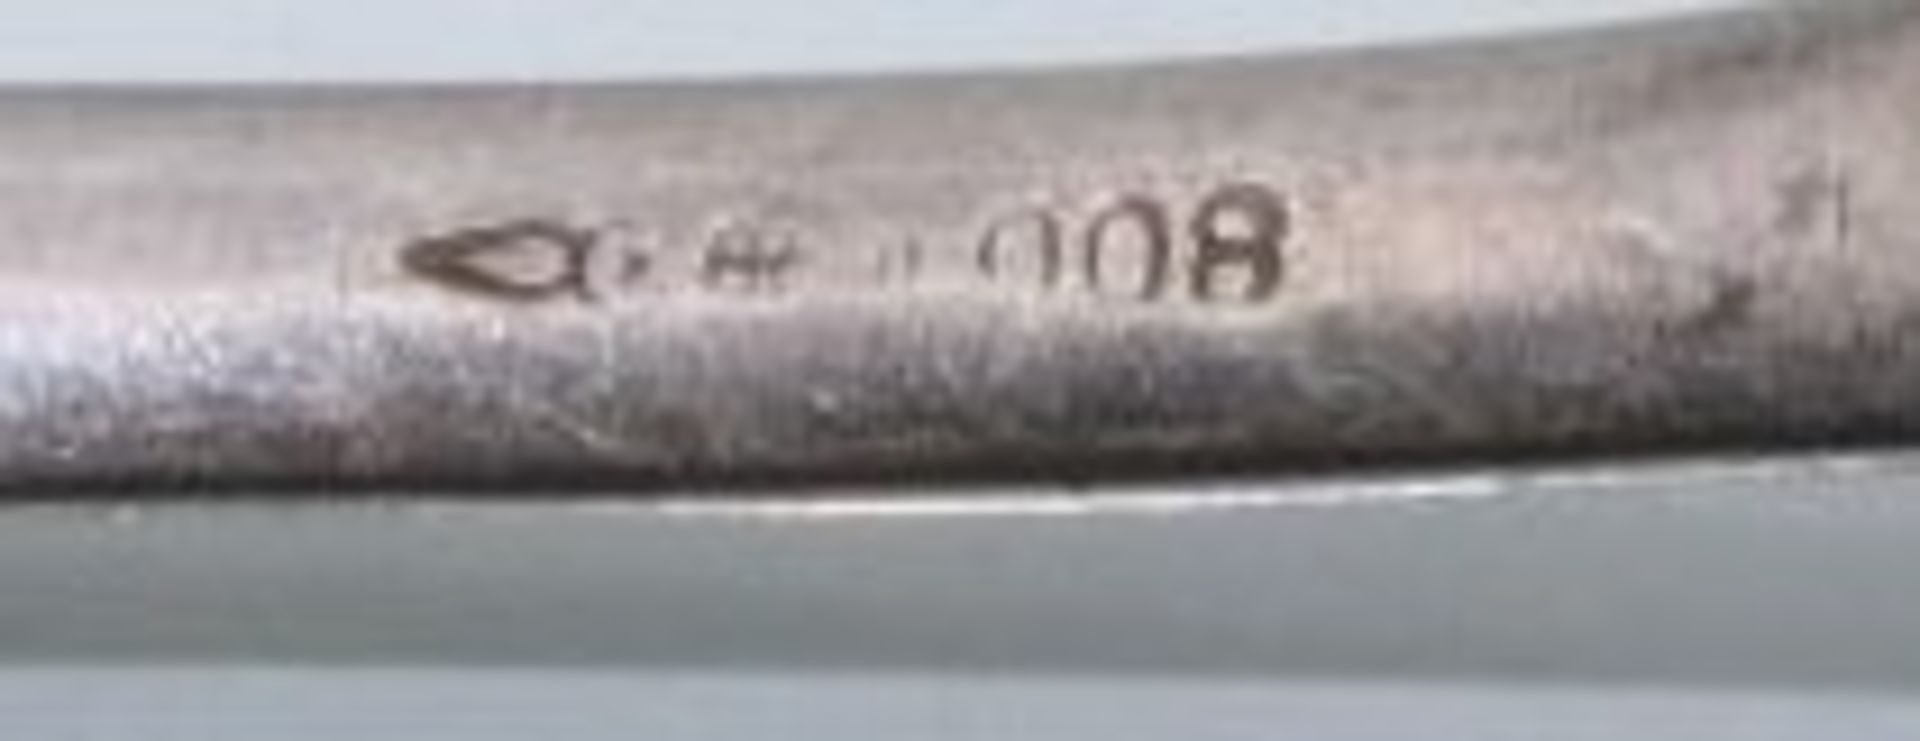 Esslöffel 800er Silber sowie 2 Messer, Griffe 800er, Löffel und 1x Messer Namensgravur "Gertrud", - Image 2 of 2